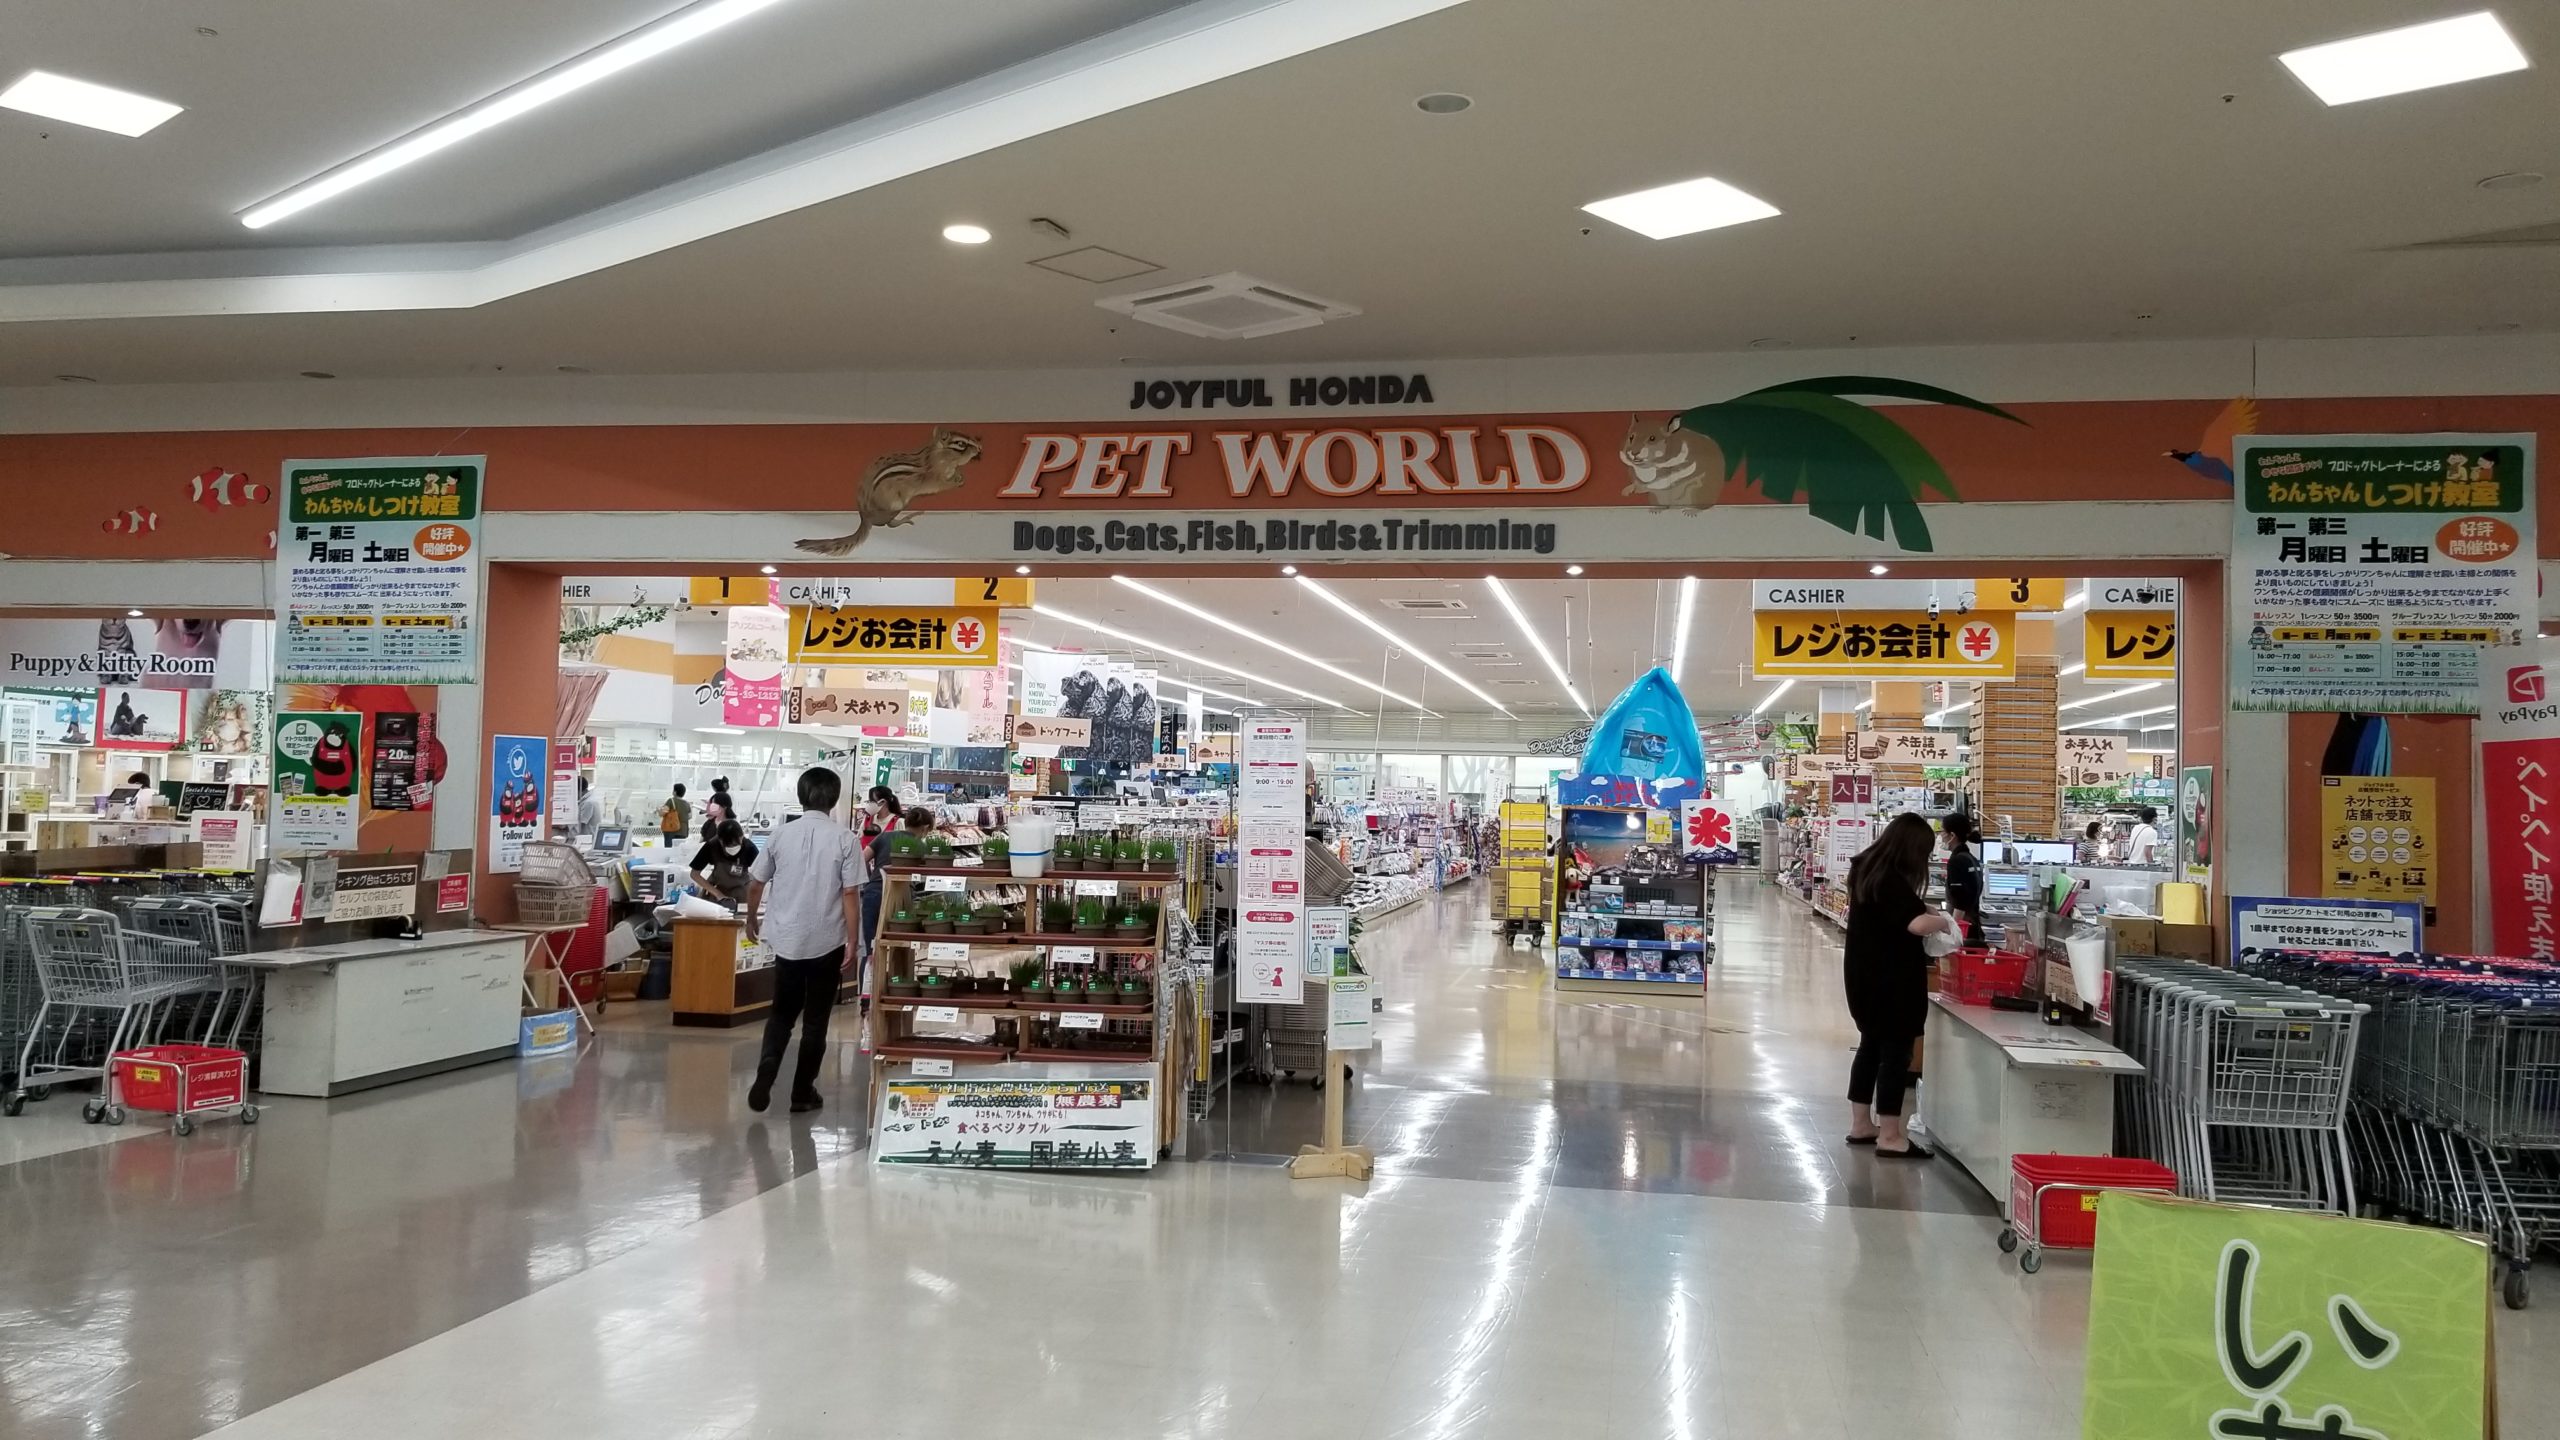 ジョイフル本田 ペットワールド宇都宮店 広い店舗に商品がいっぱい リクガメは猫